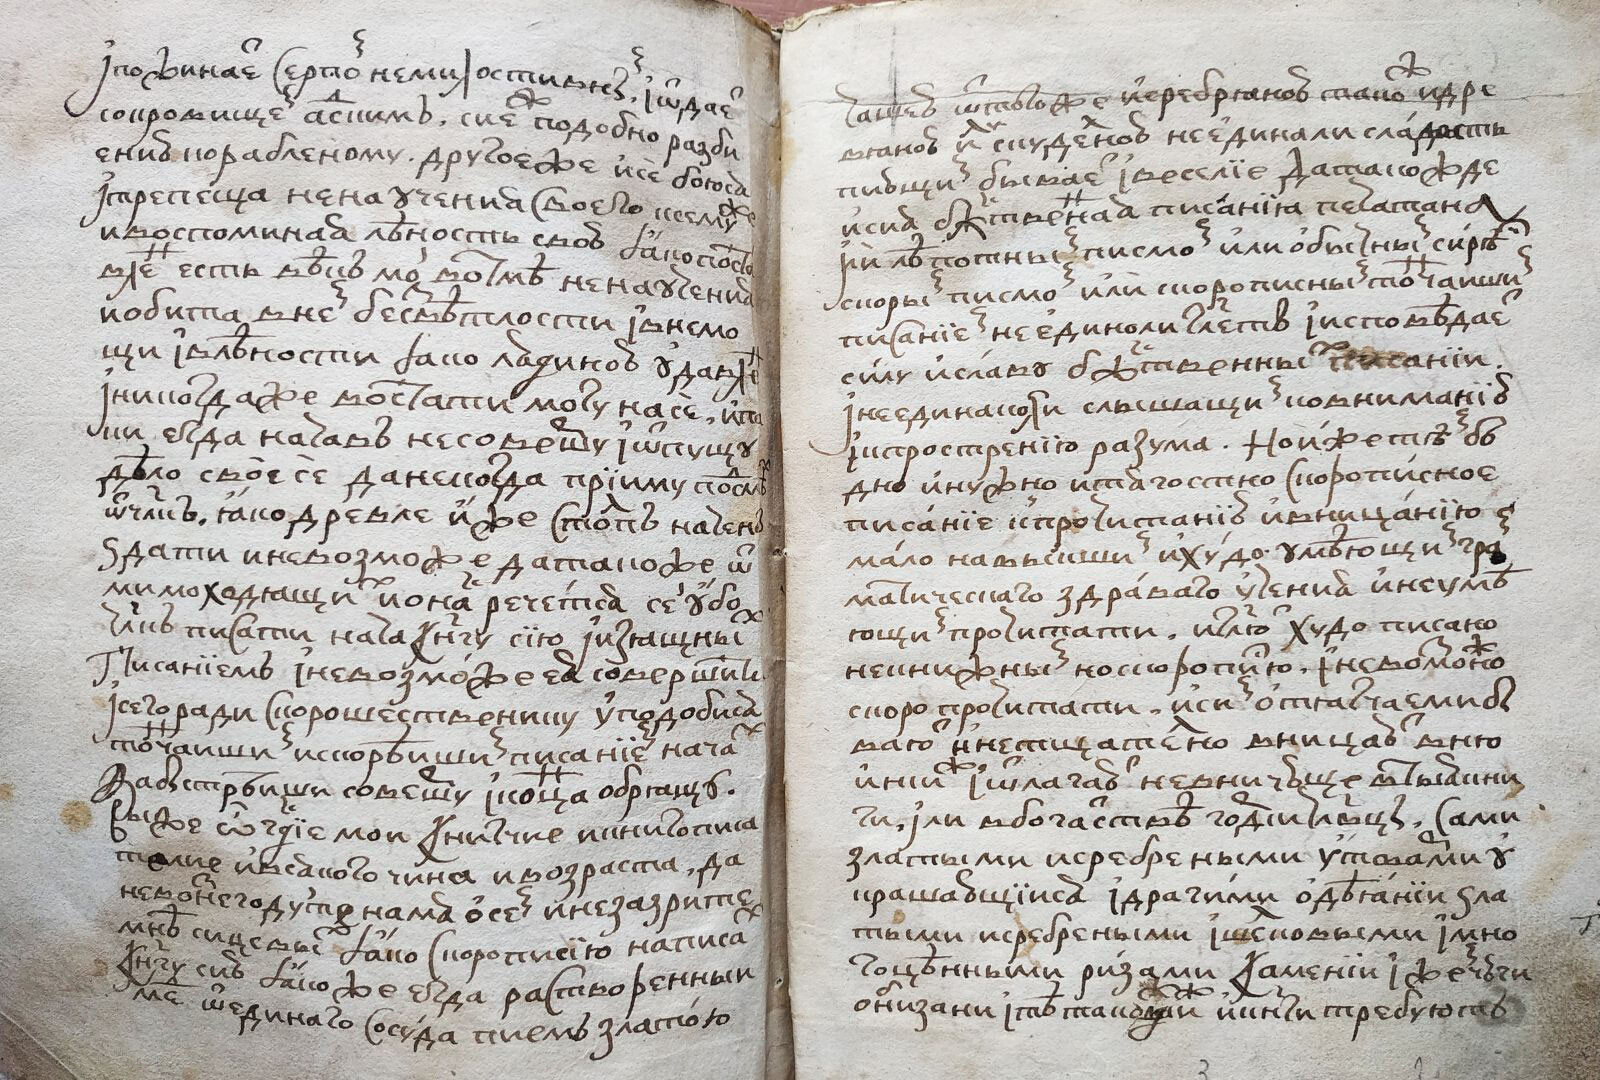 Una muestra de la escritura formal rusa del siglo XVII